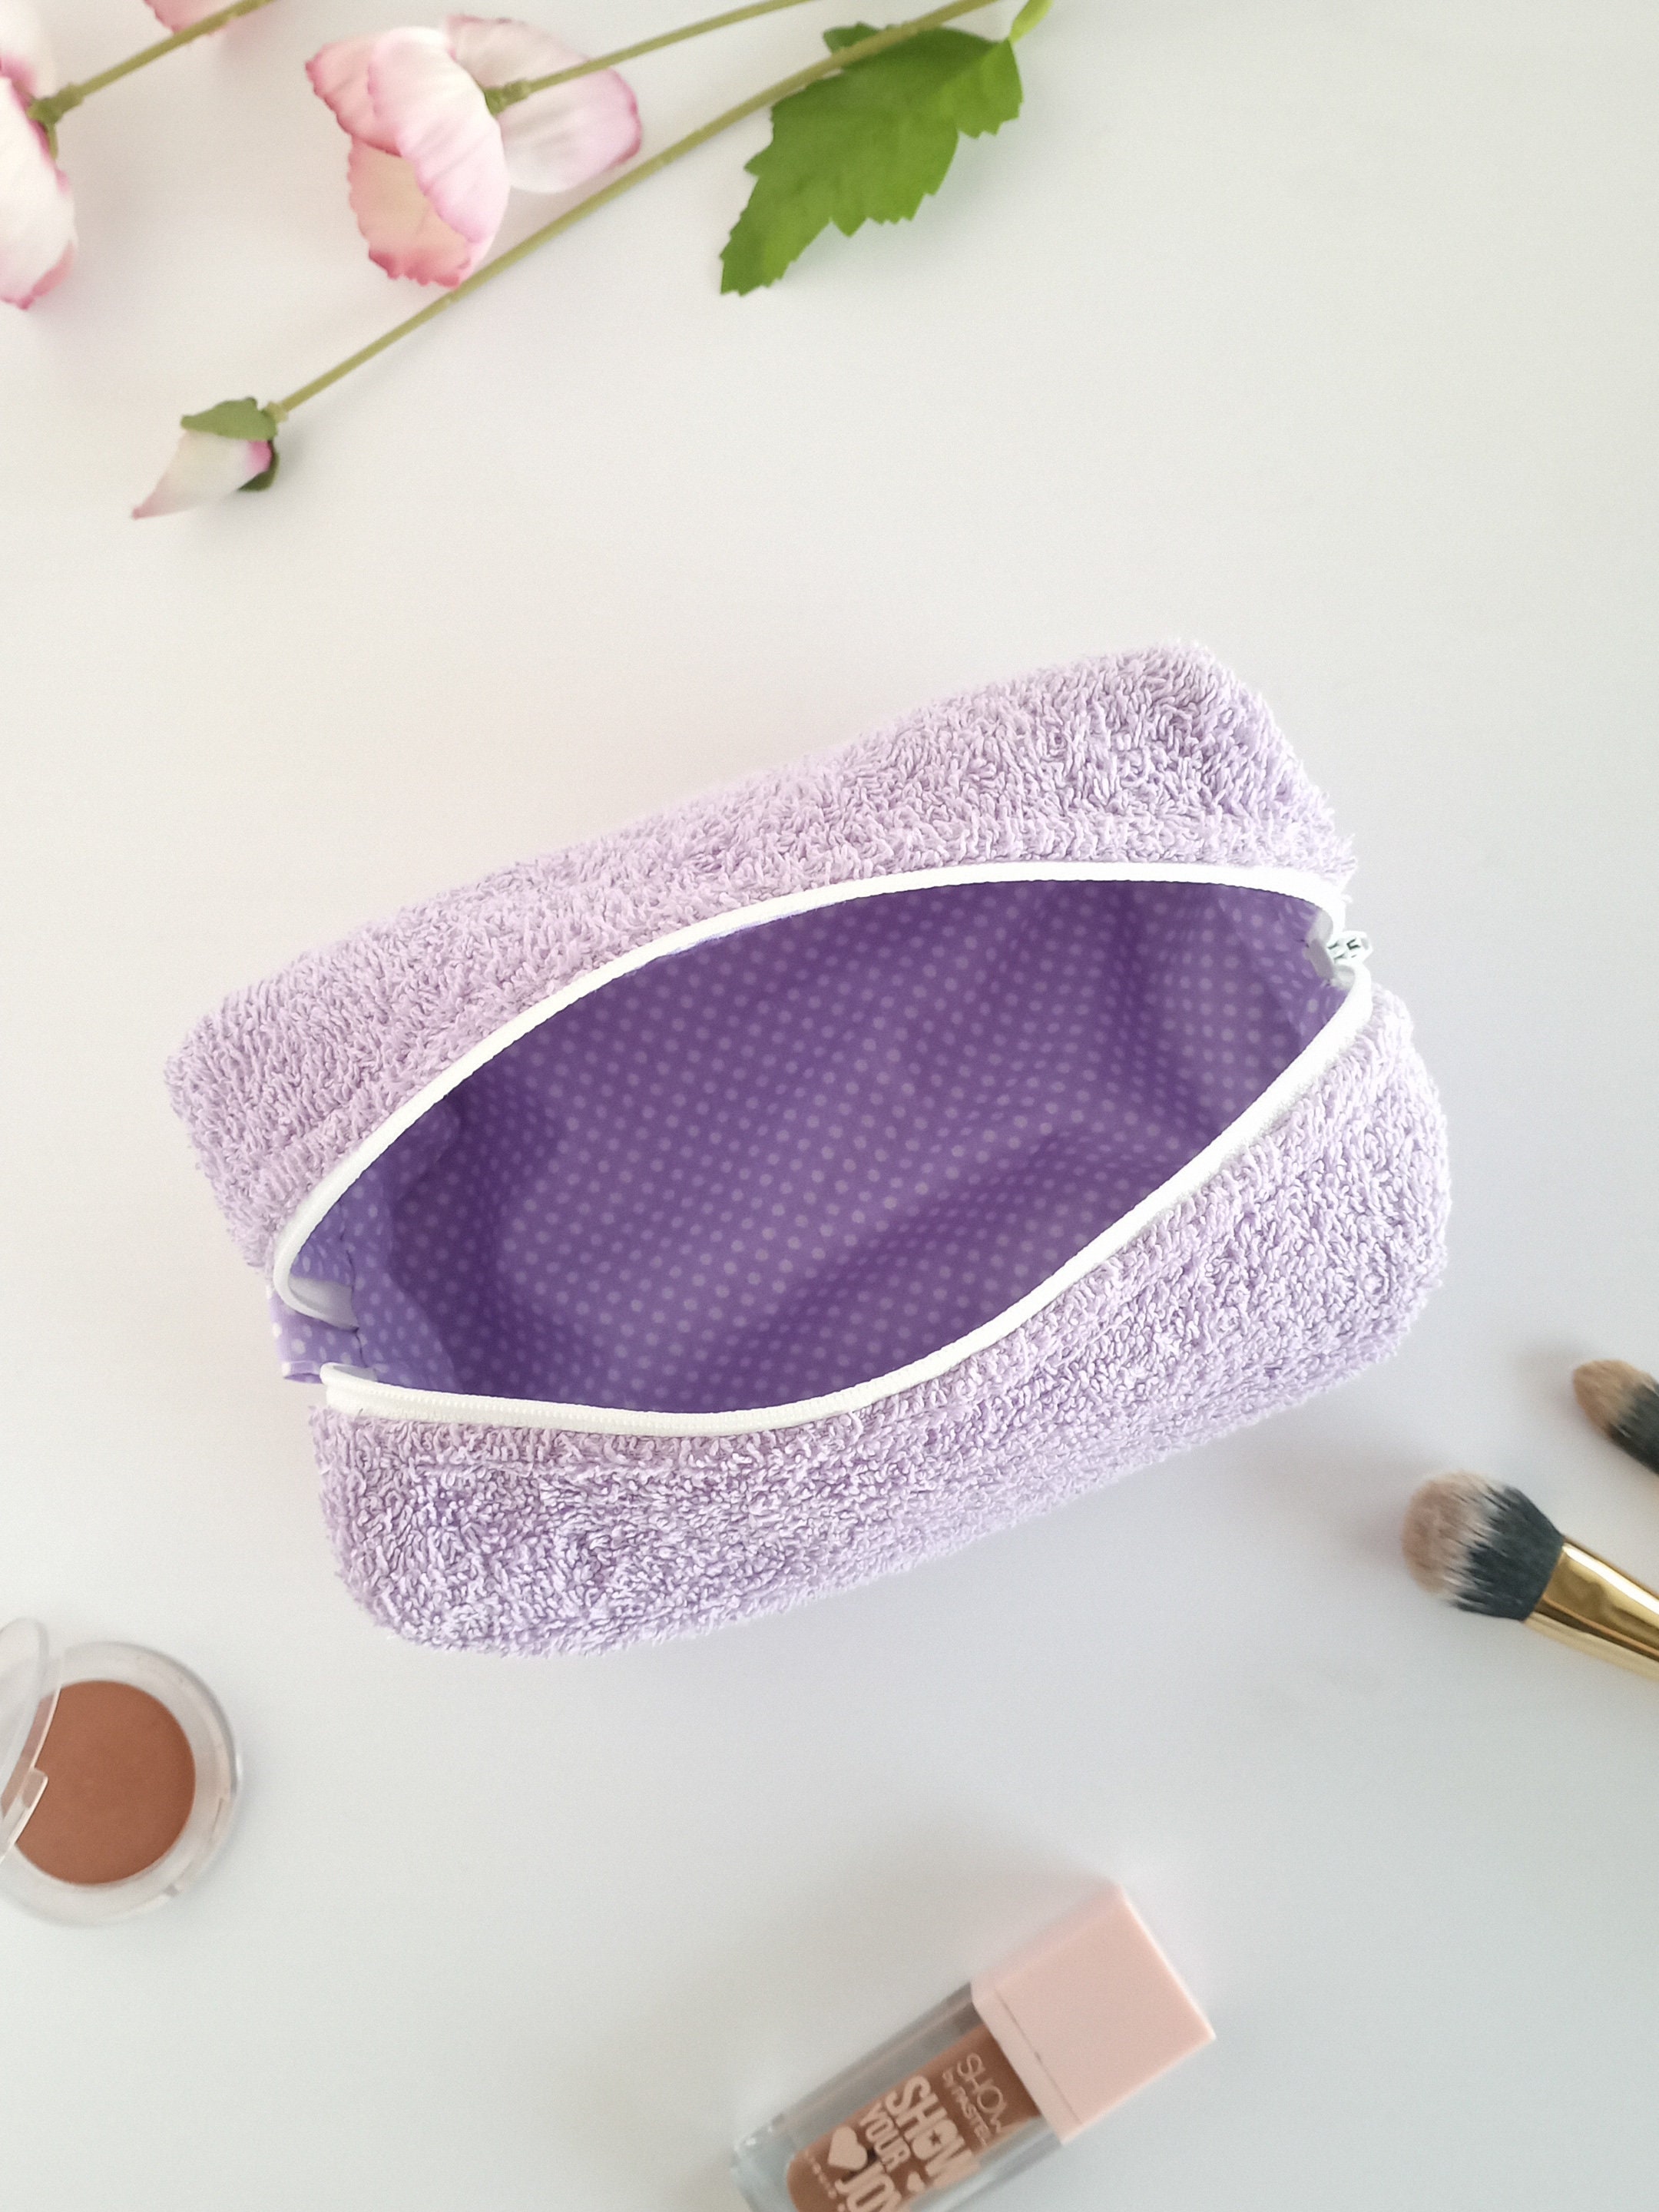 Lilac Oversized Makeup Bag